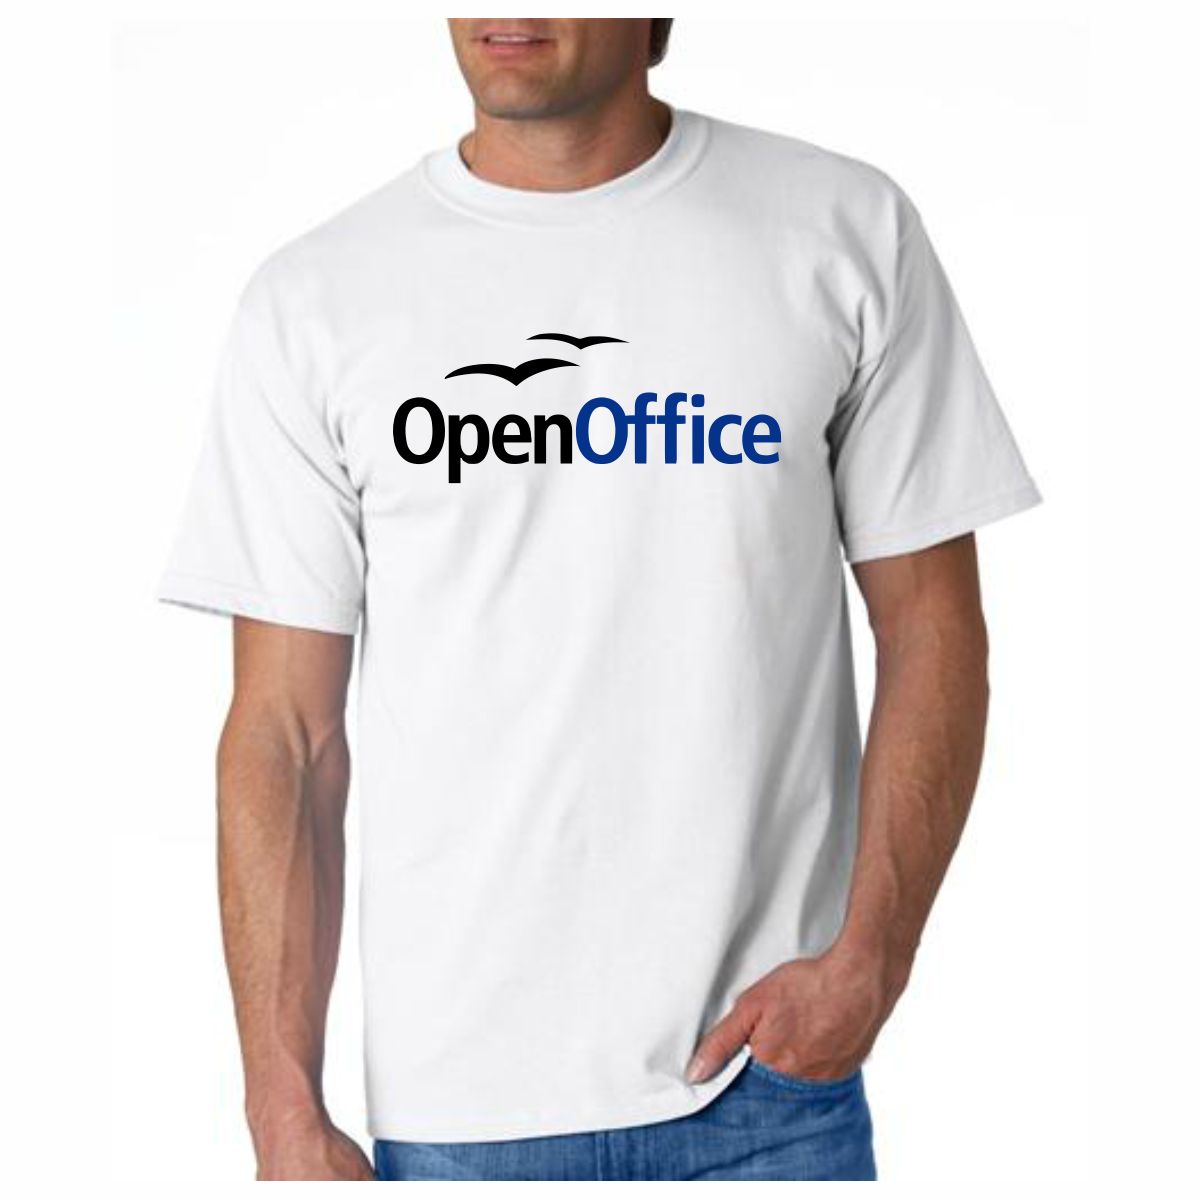 Open Office T-Shirt